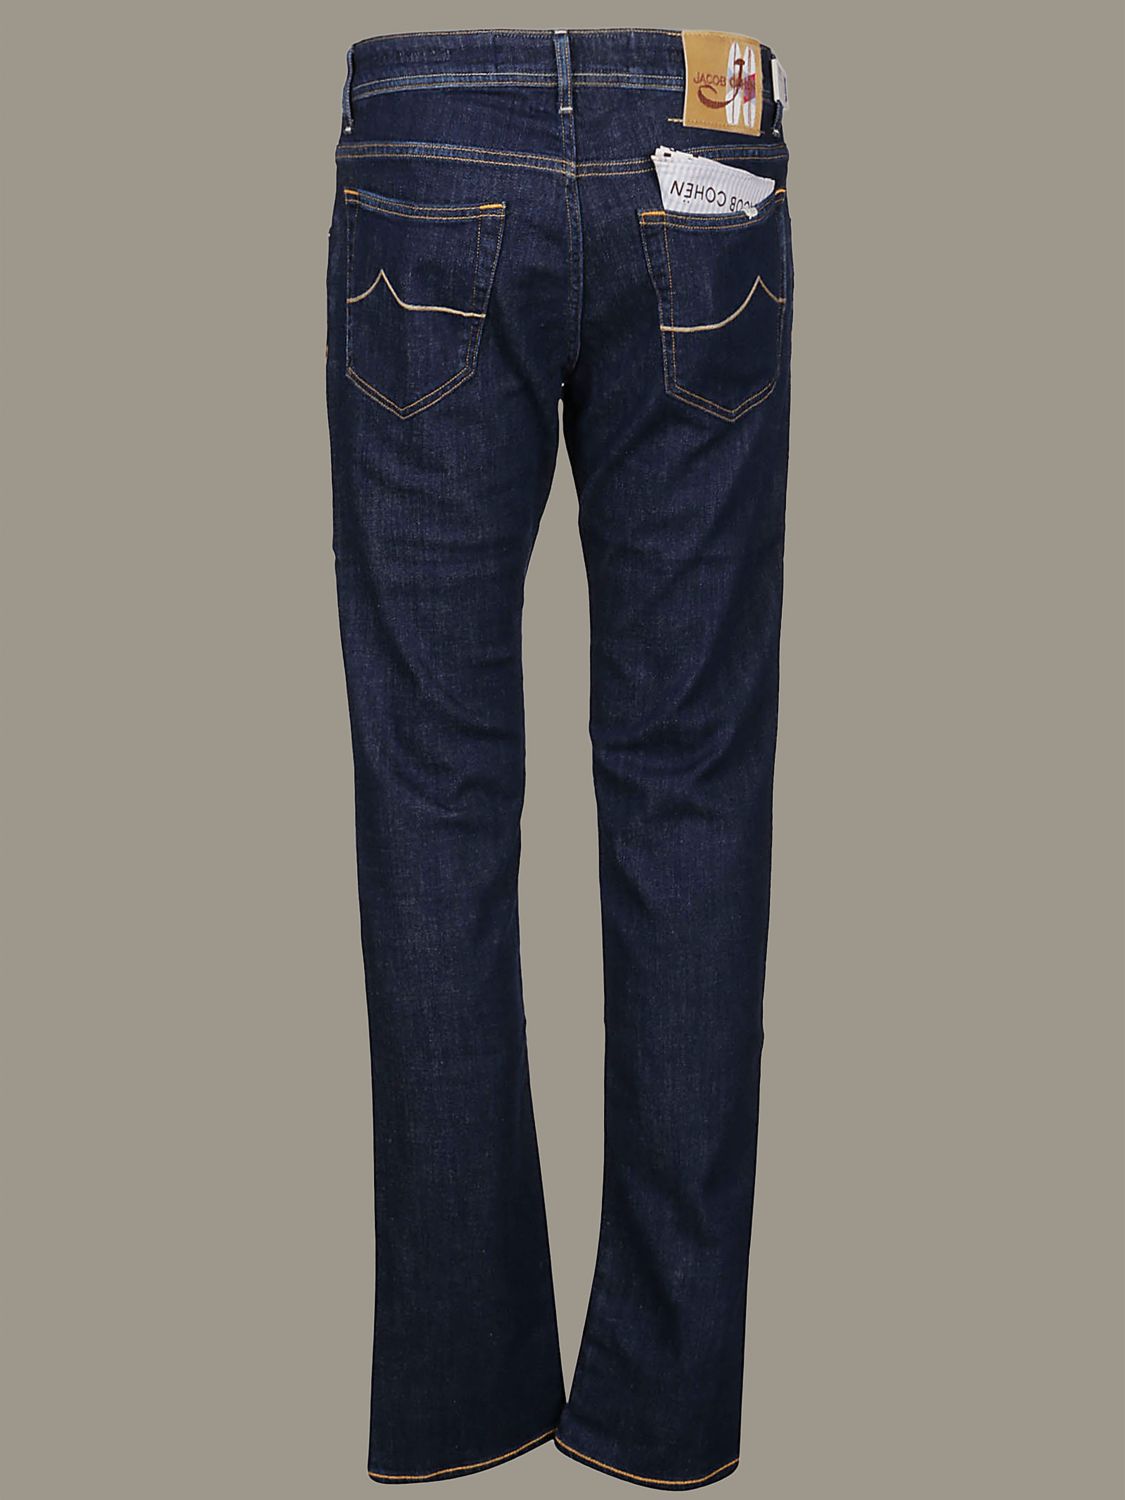 jacob cohen jeans online shop